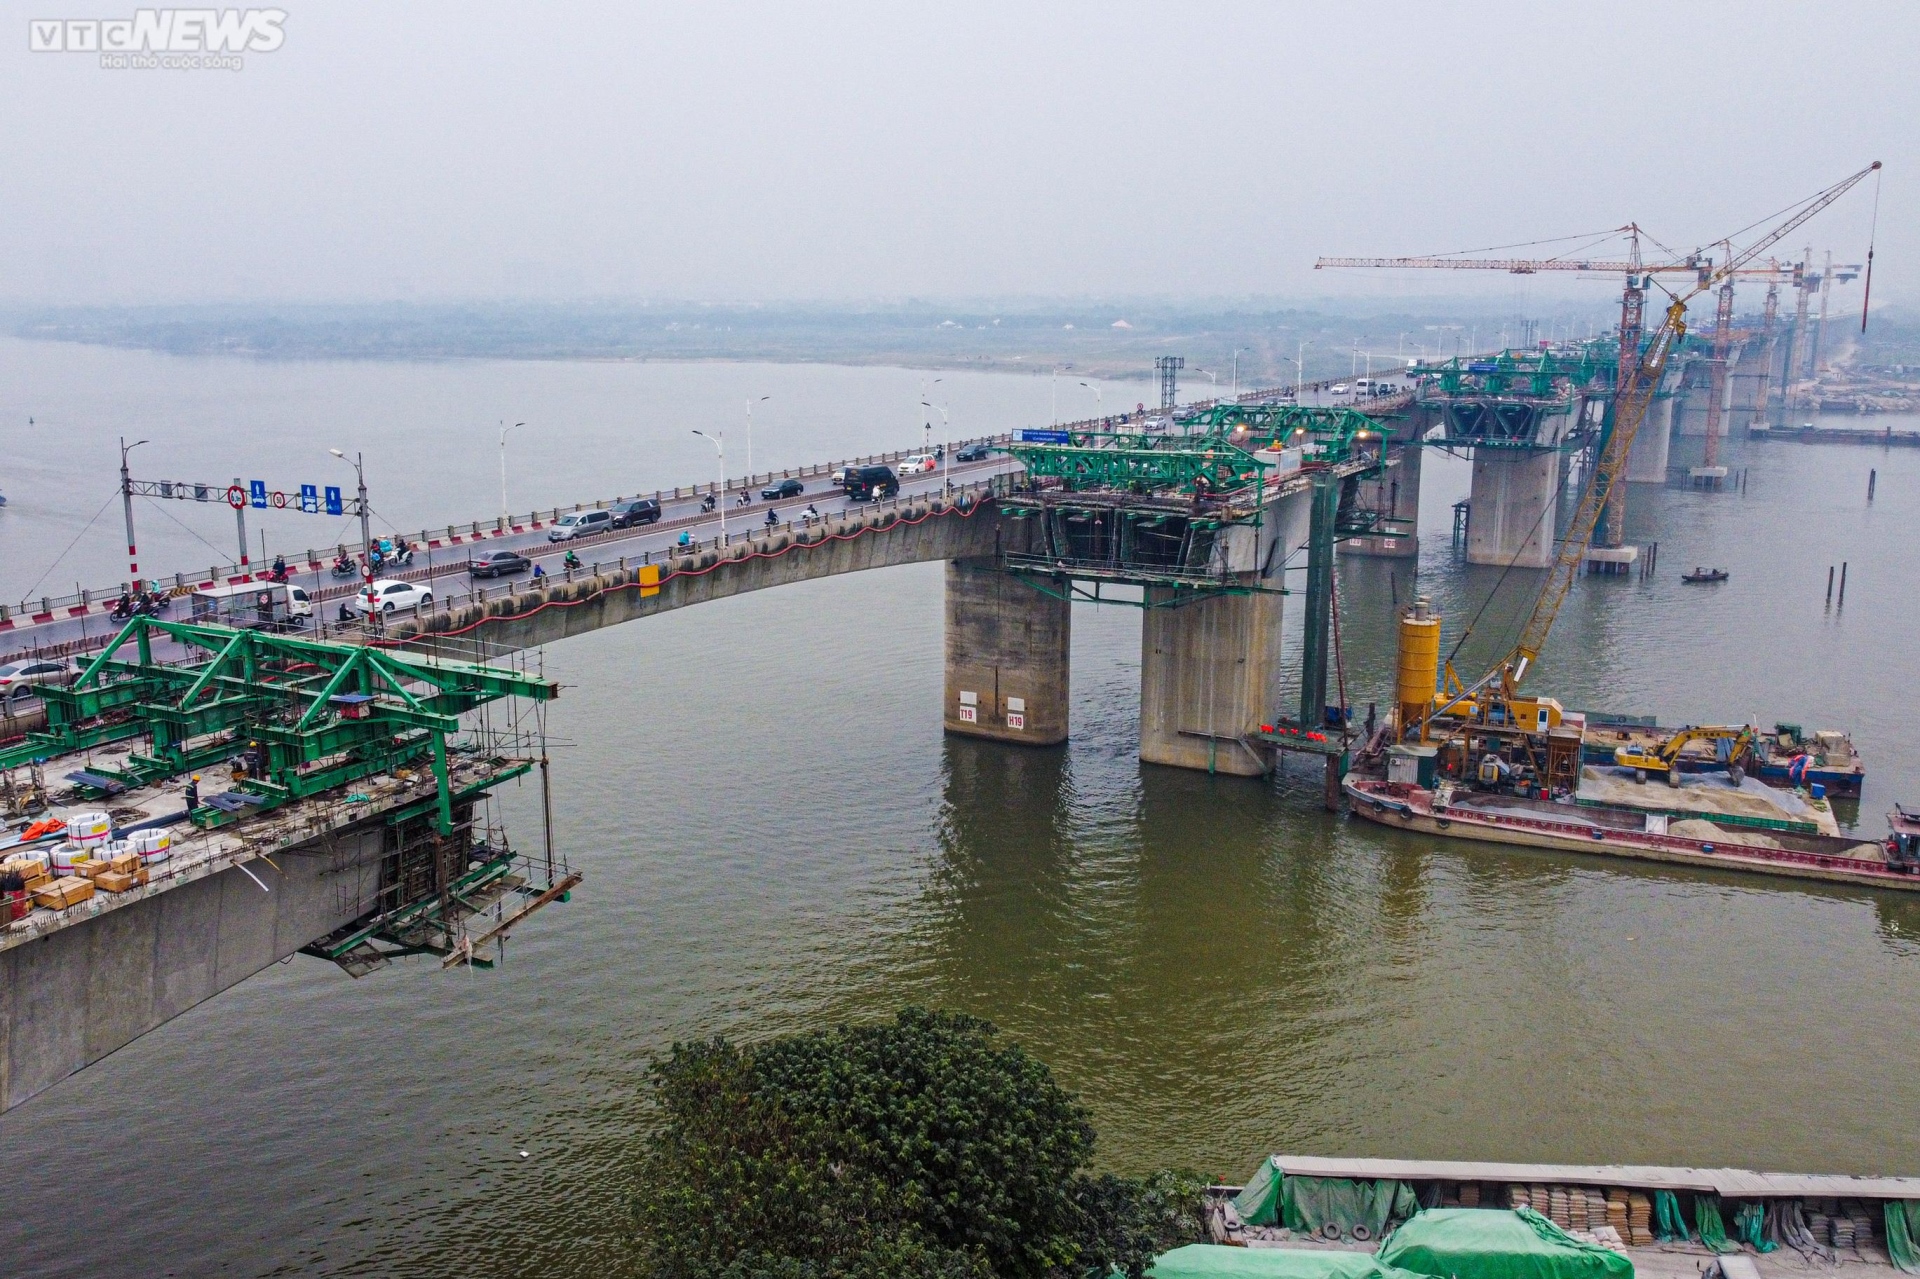 Toàn cảnh dự án cầu Vĩnh Tuy sắp hoàn thành nhìn từ trên cao - Ảnh 1.